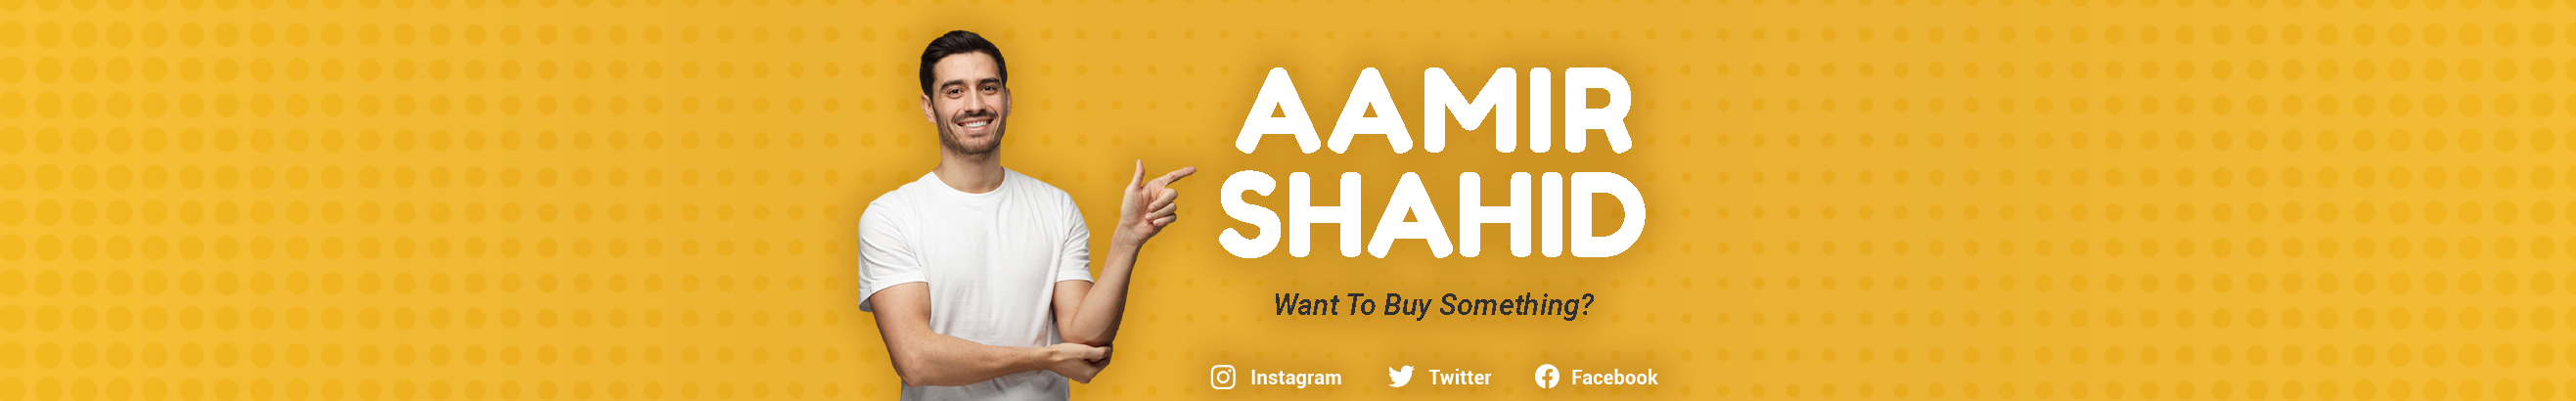 Profil-Banner von Aamir Shahid